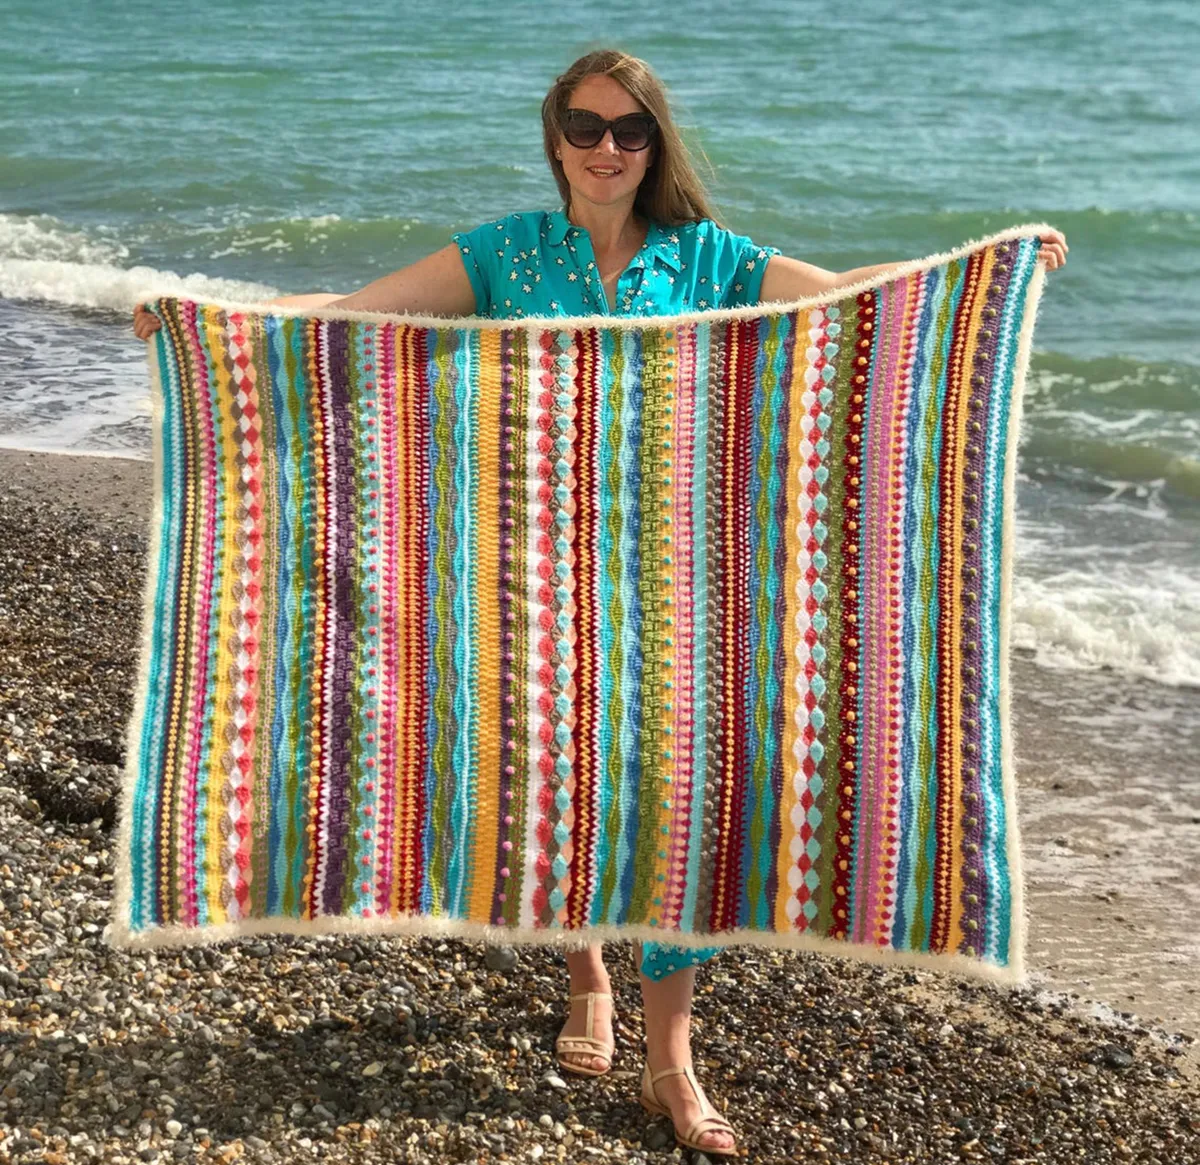 seaside_stashbuster_crochet_blanket_pattern